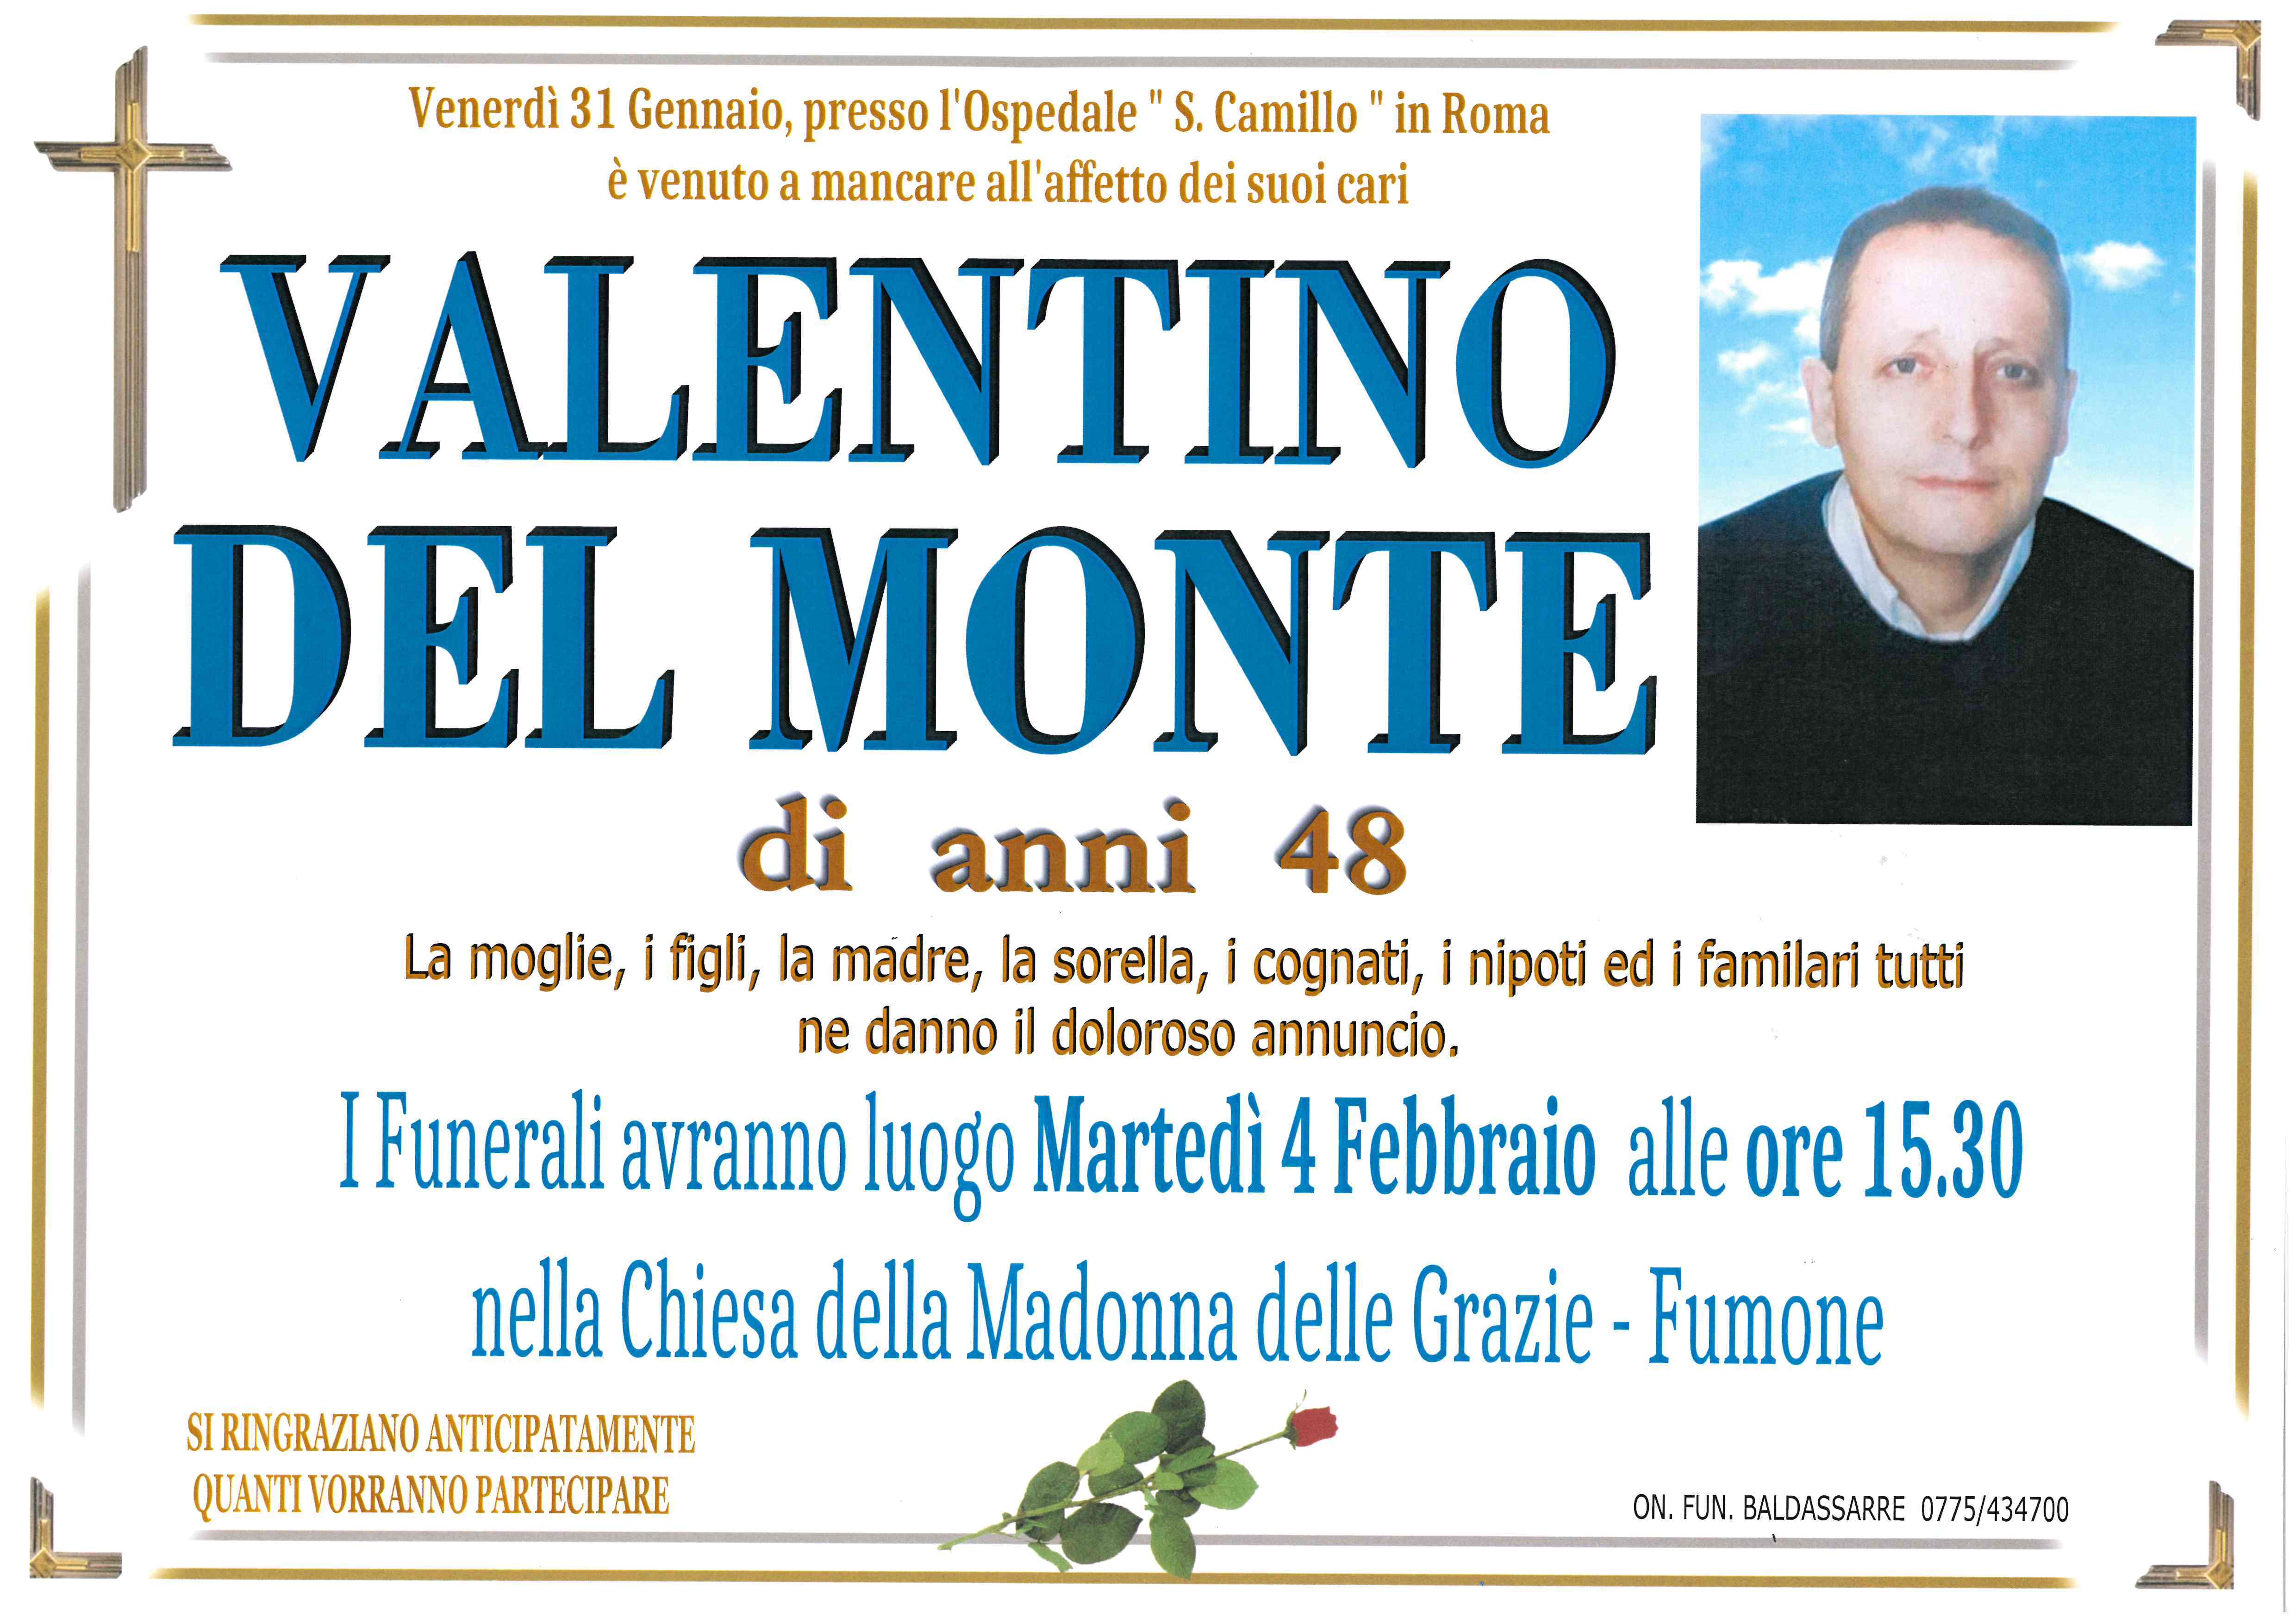 Valentino Del Monte